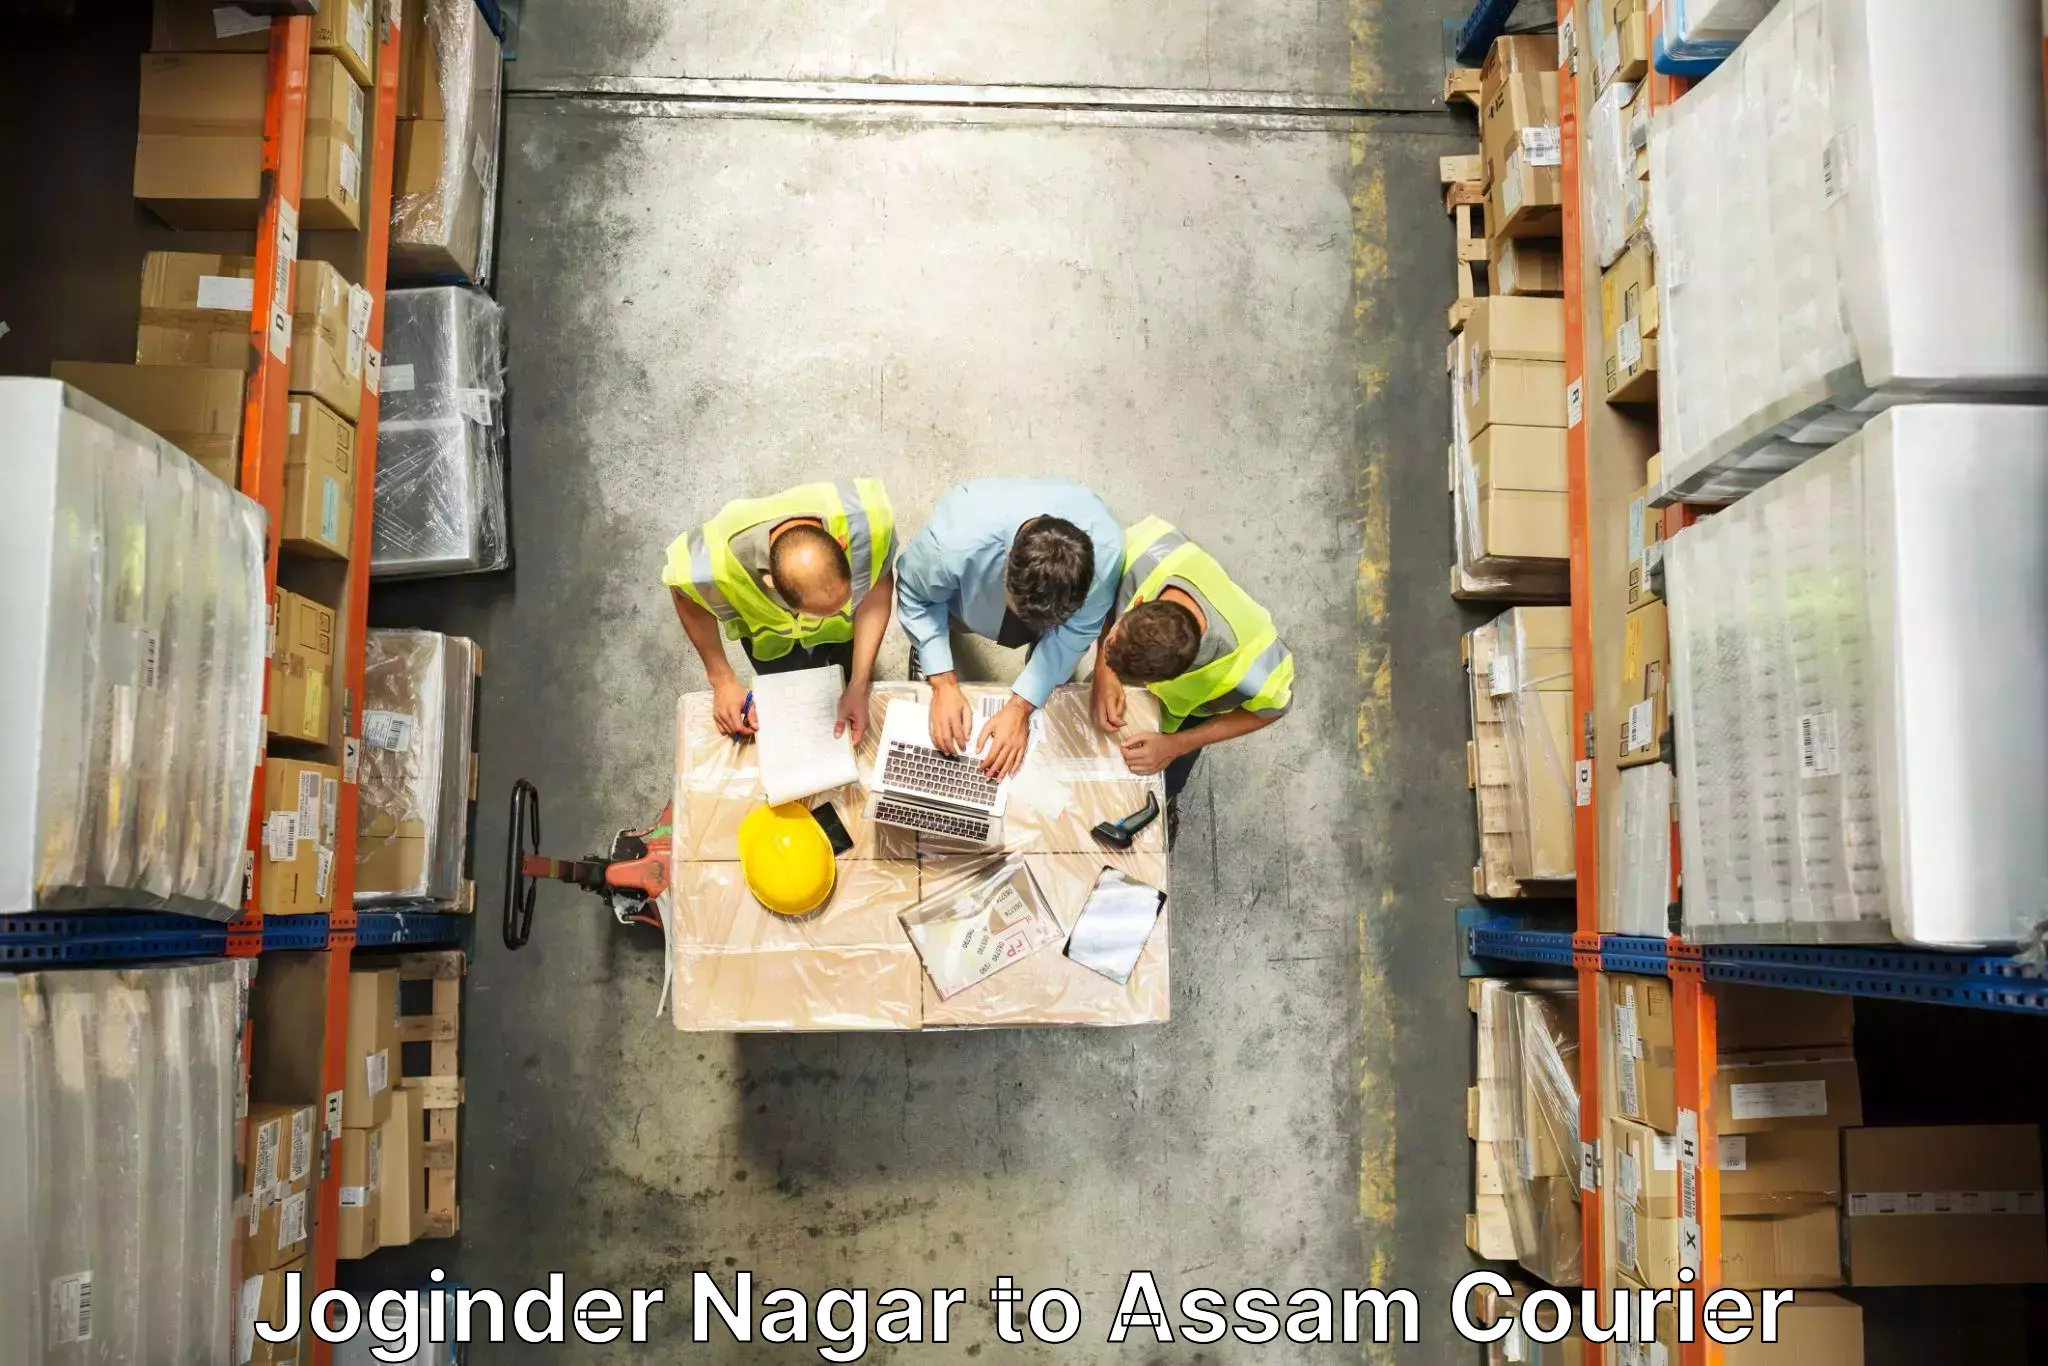 Furniture transport professionals Joginder Nagar to Lala Assam